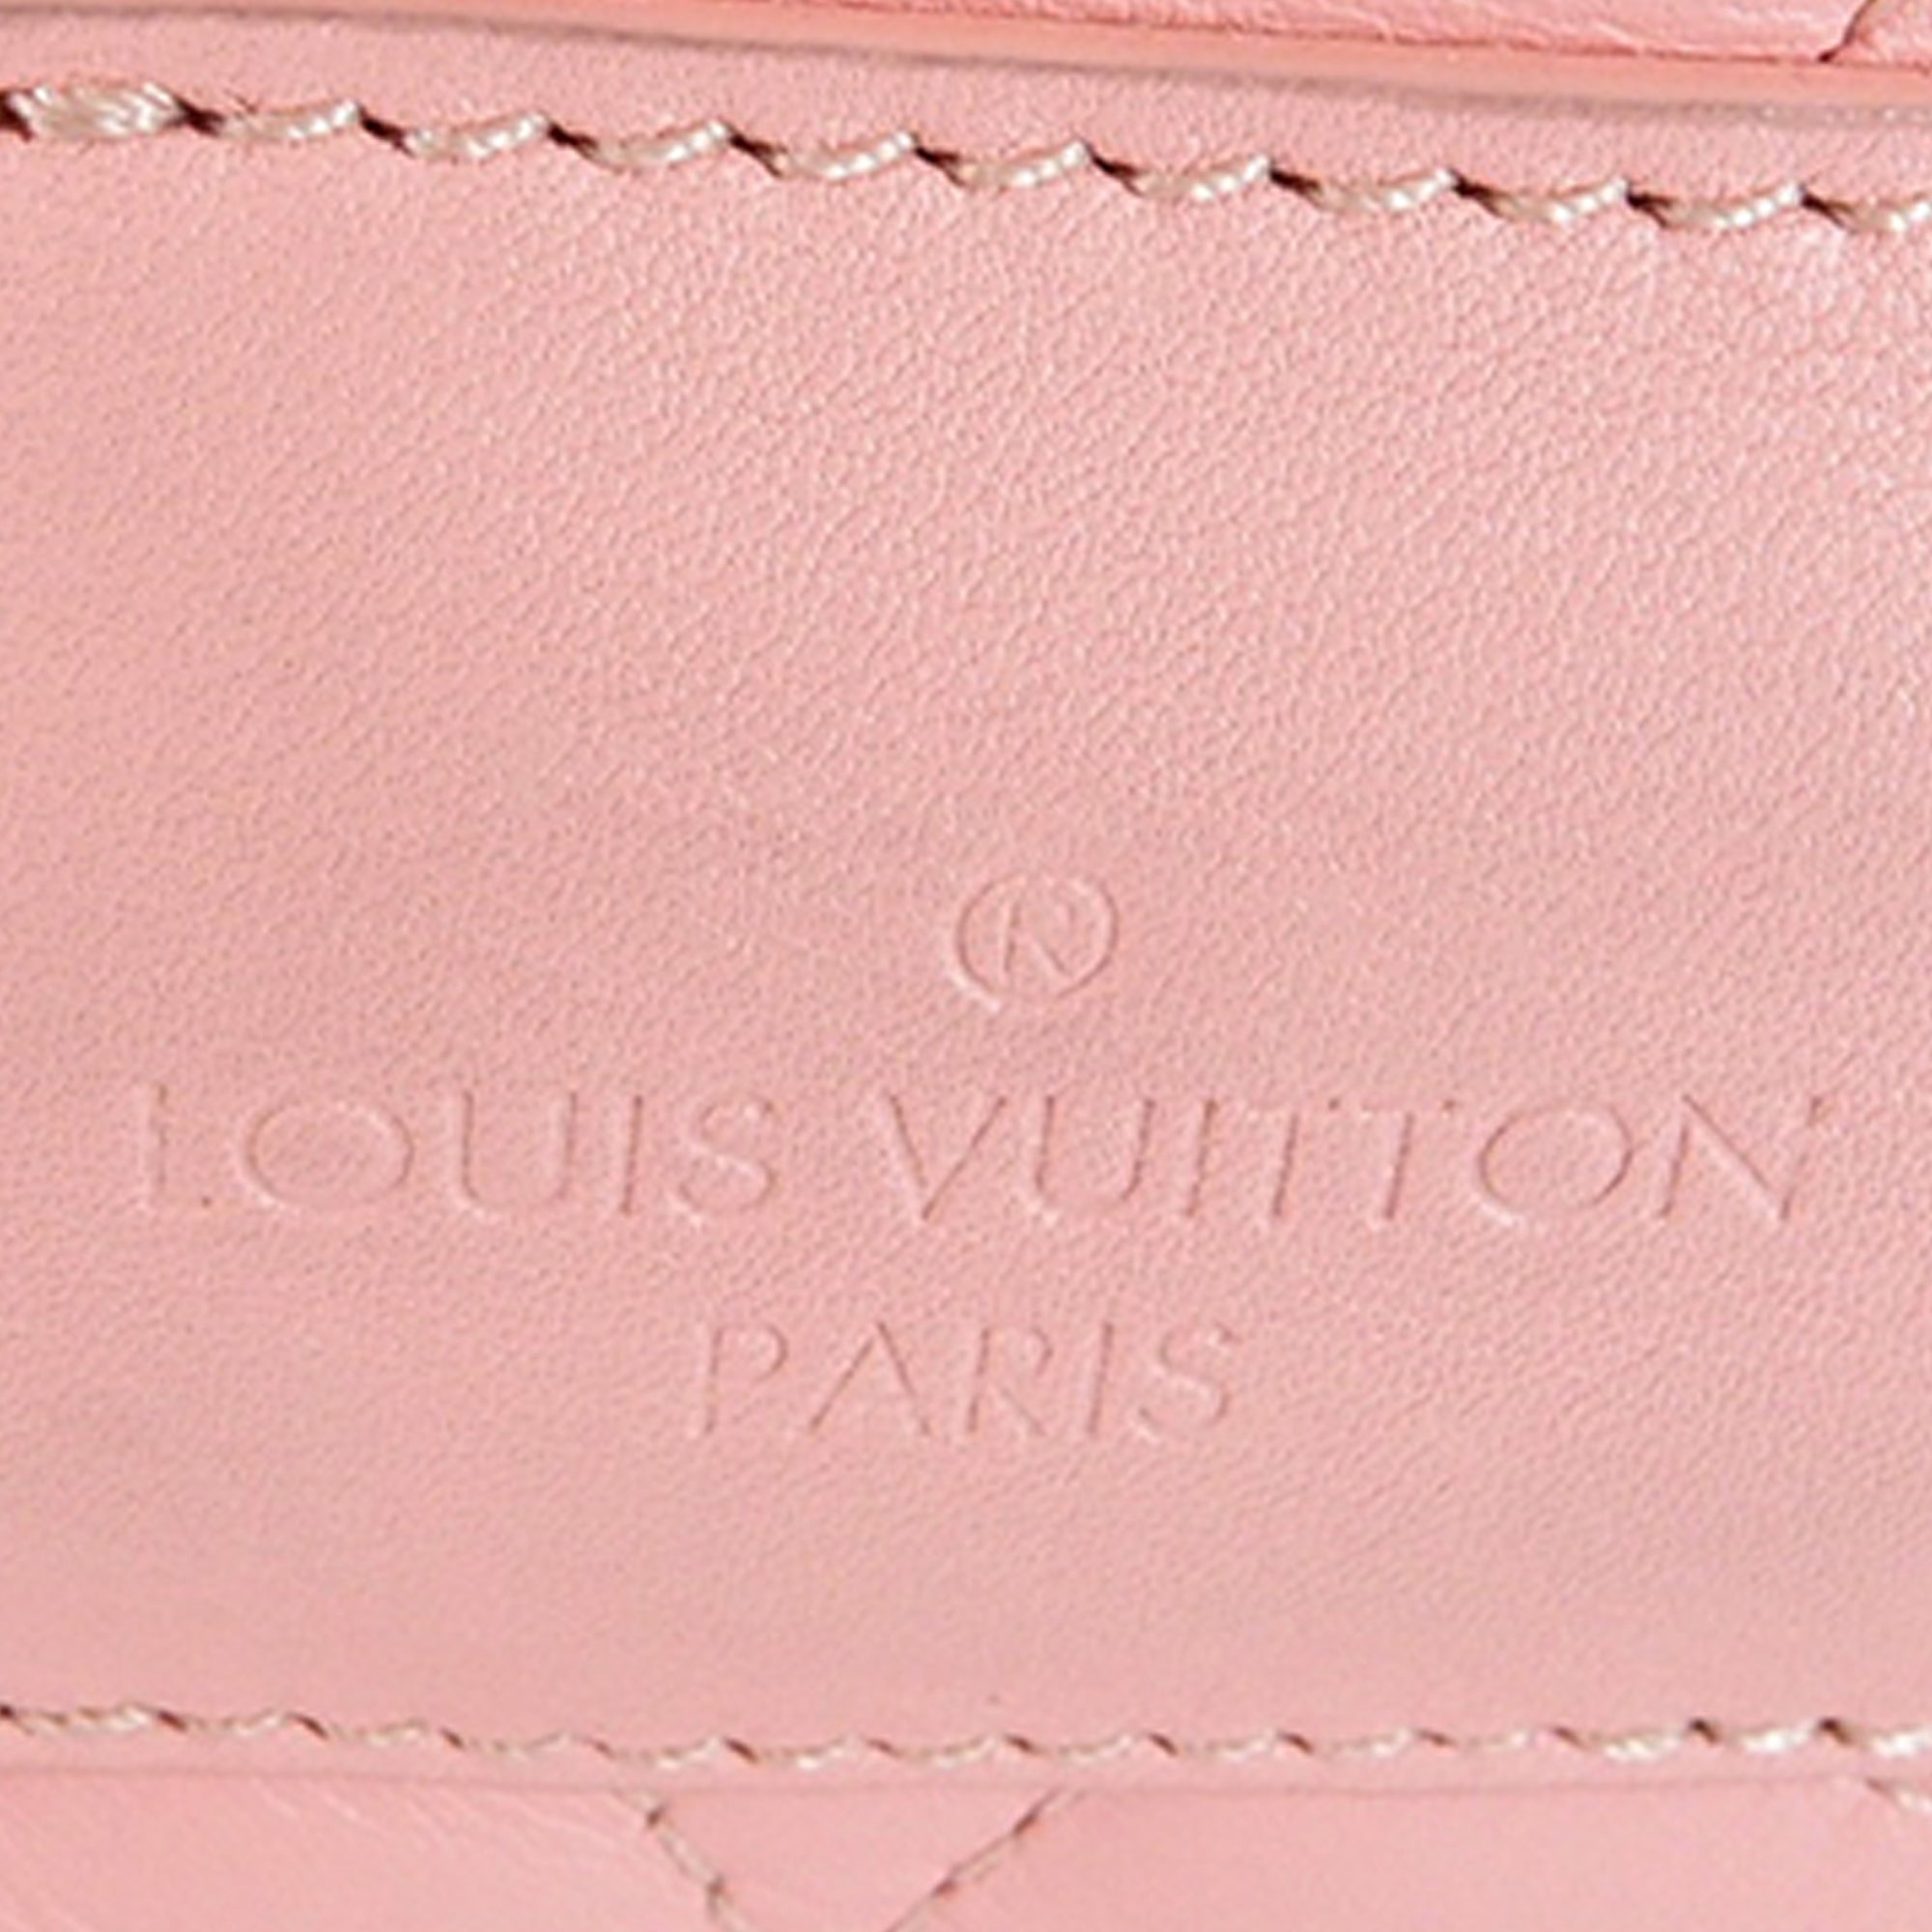 Louis Vuitton Rouge ÉCarlate Quilted Calfskin New Wave Lock Heart